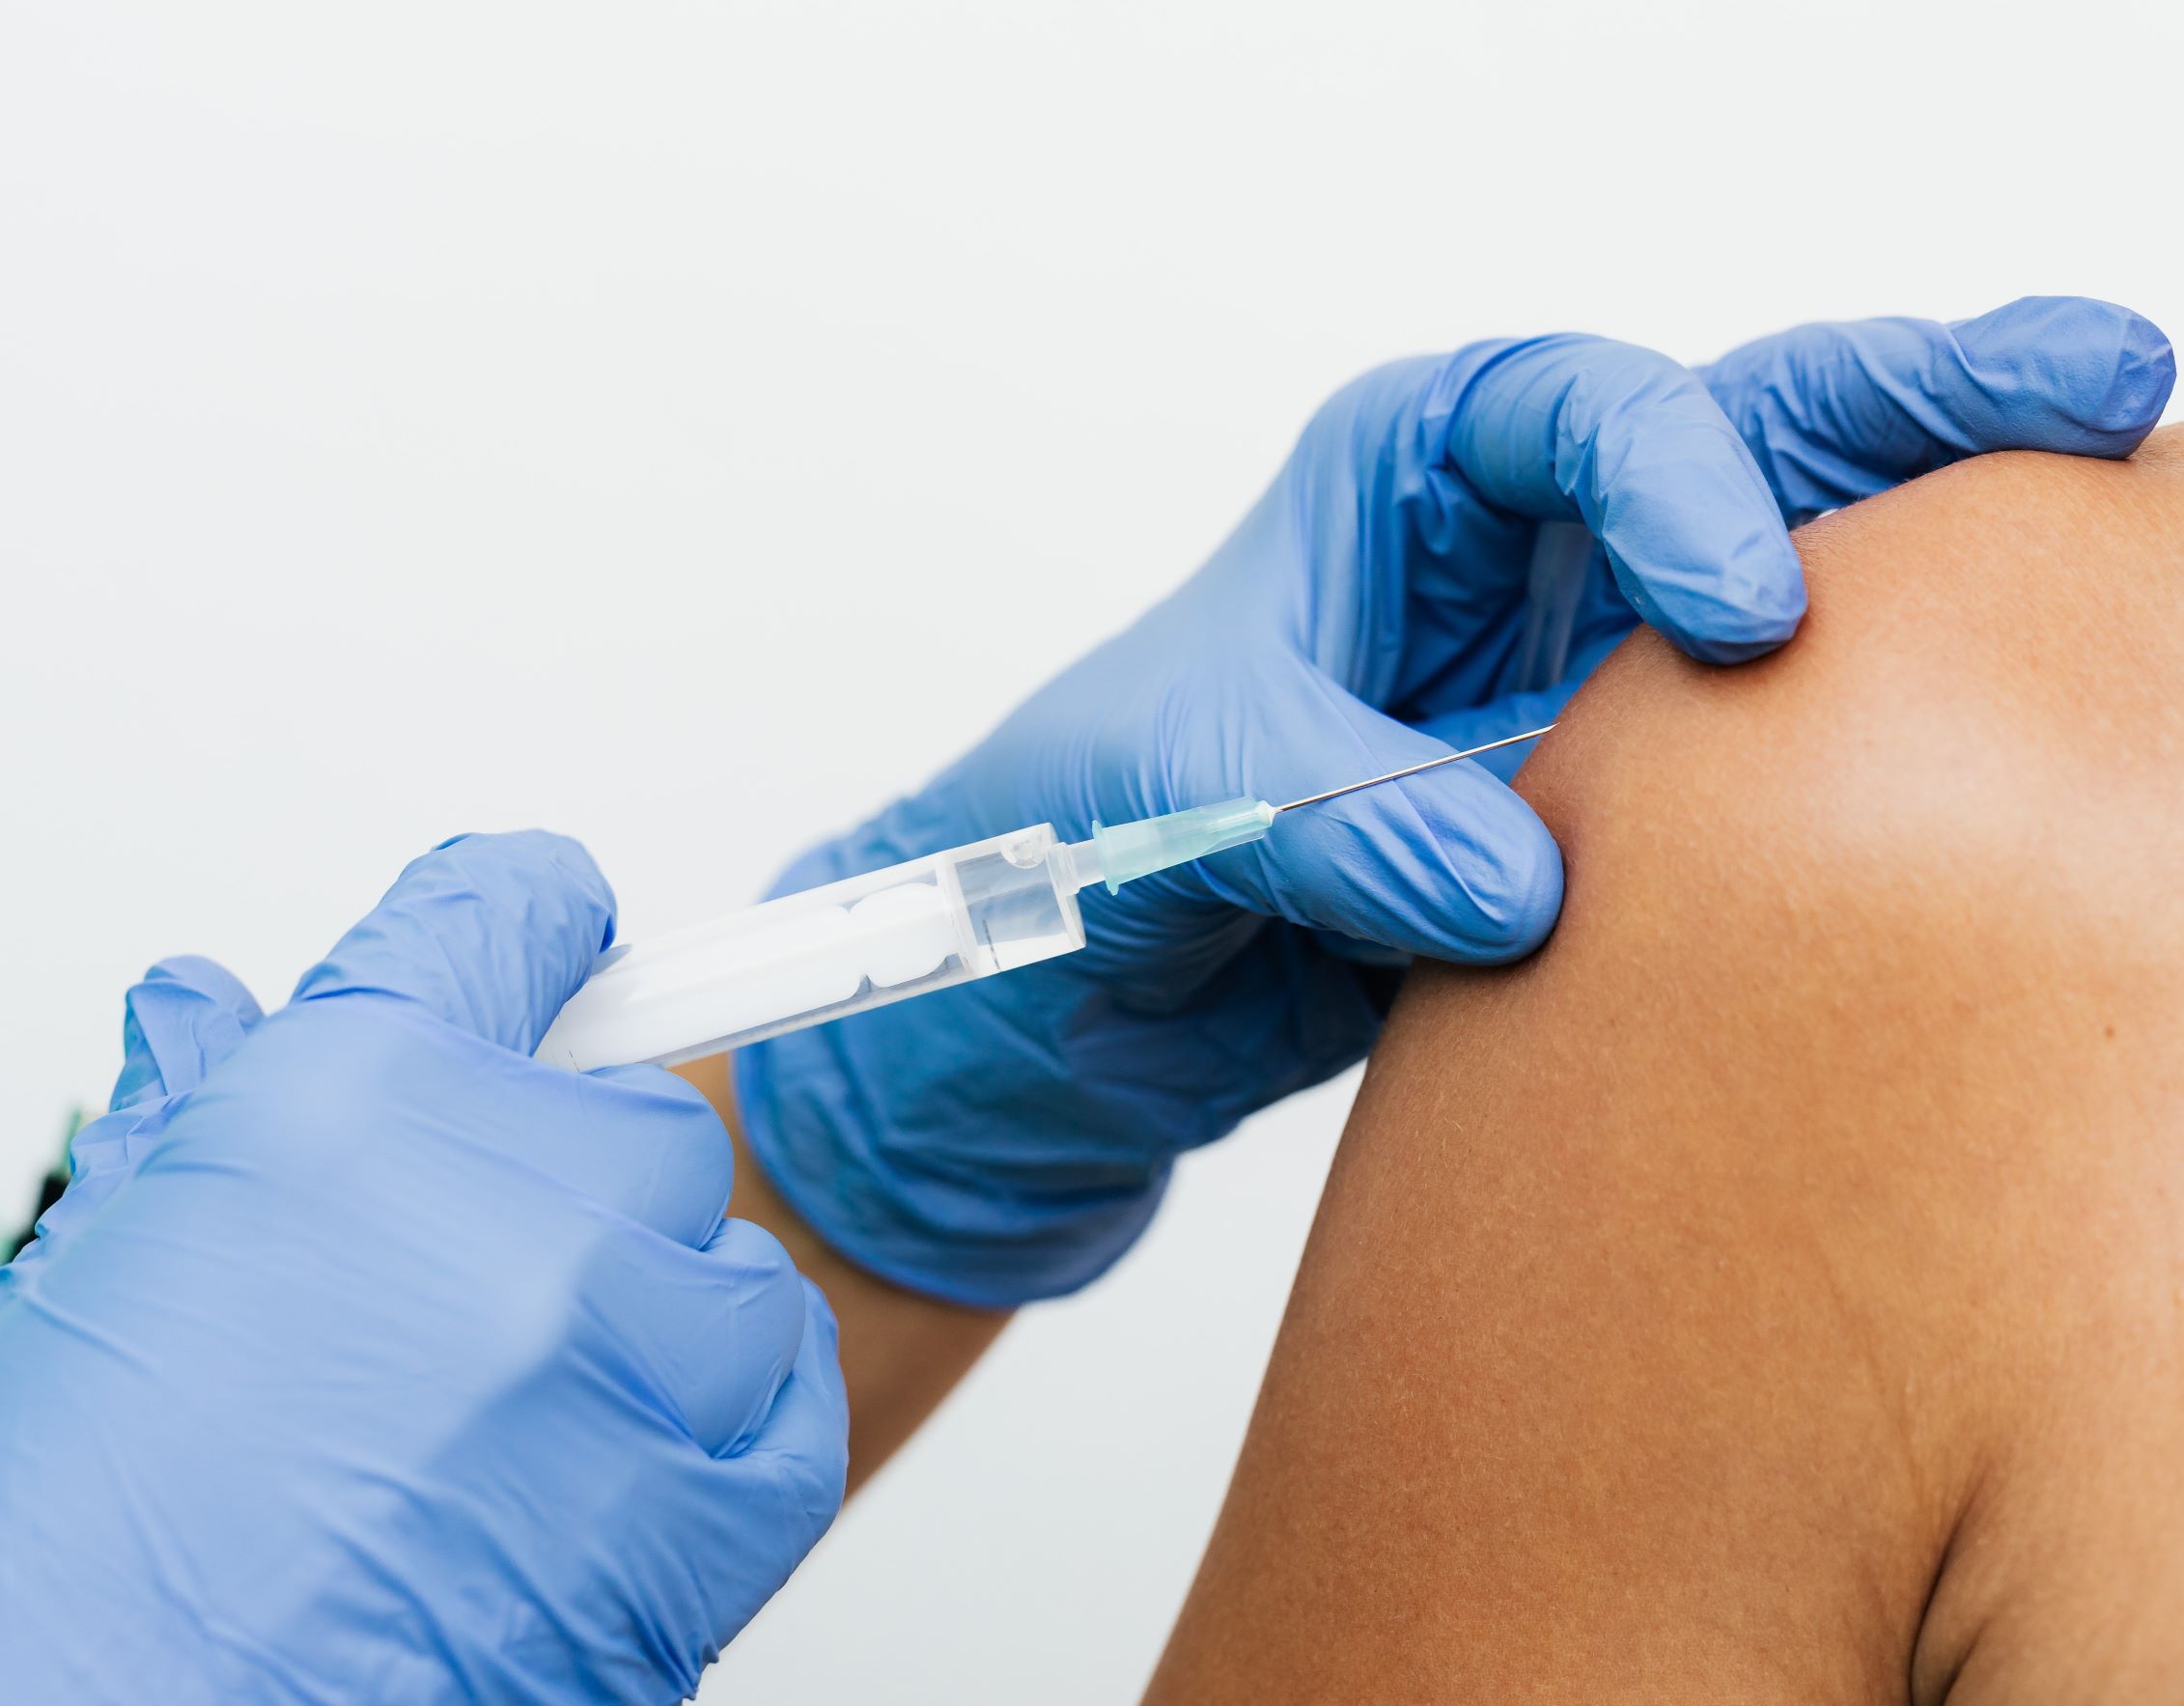 Υποχρεωτικός εμβολιασμός: Ξεκινά από τους επαγγελματίες υγείας, ακολουθούν σώματα ασφαλείας, μέσα μεταφοράς και εκπαίδευση